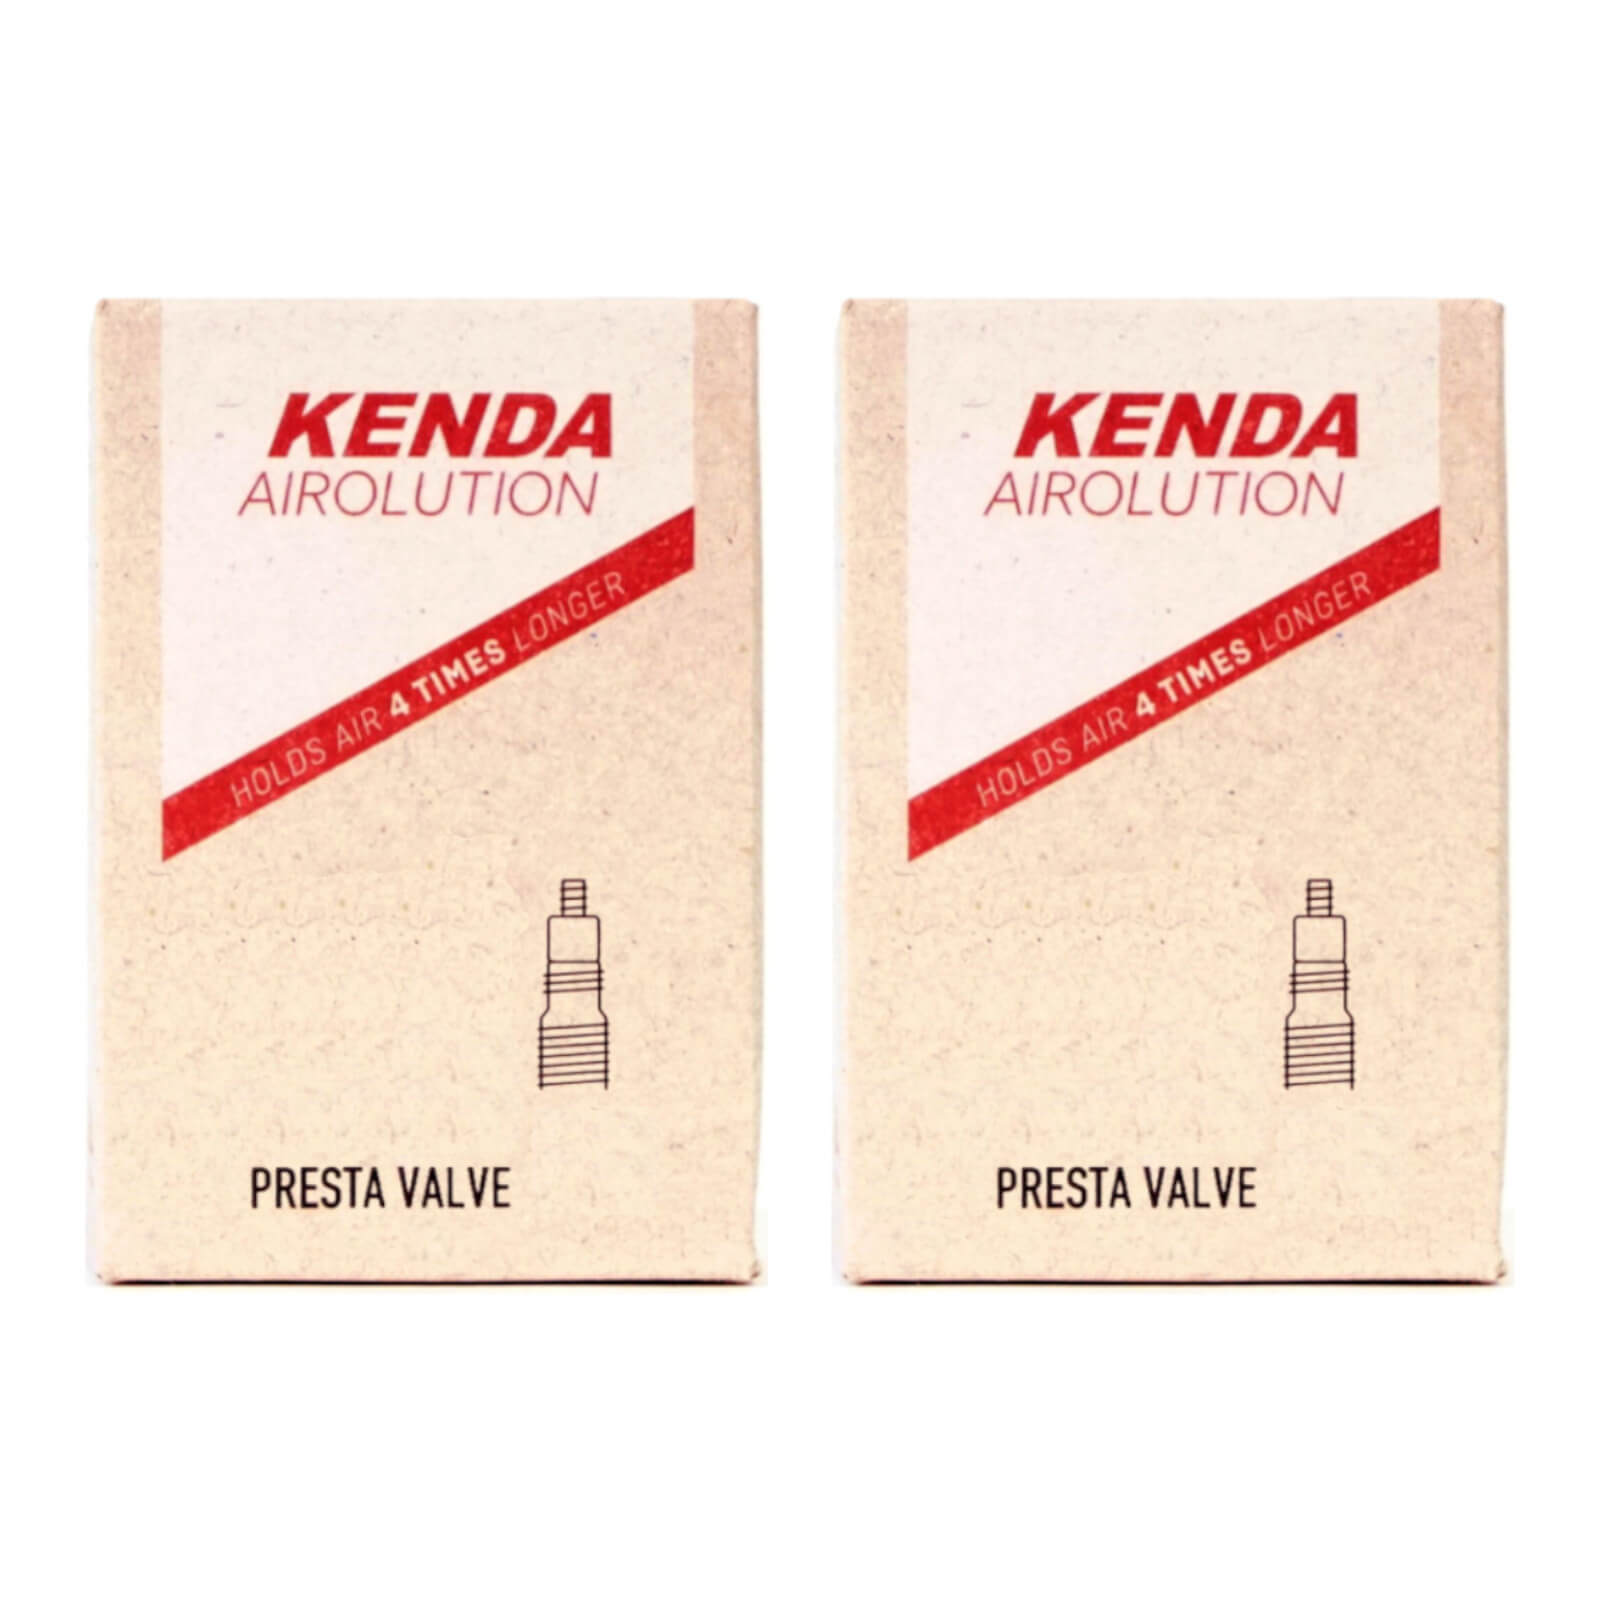 Kenda Airolution 27.5x2.0-2.4" 27.5 Inch Presta Valve Bike Inner Tube Pack of 2